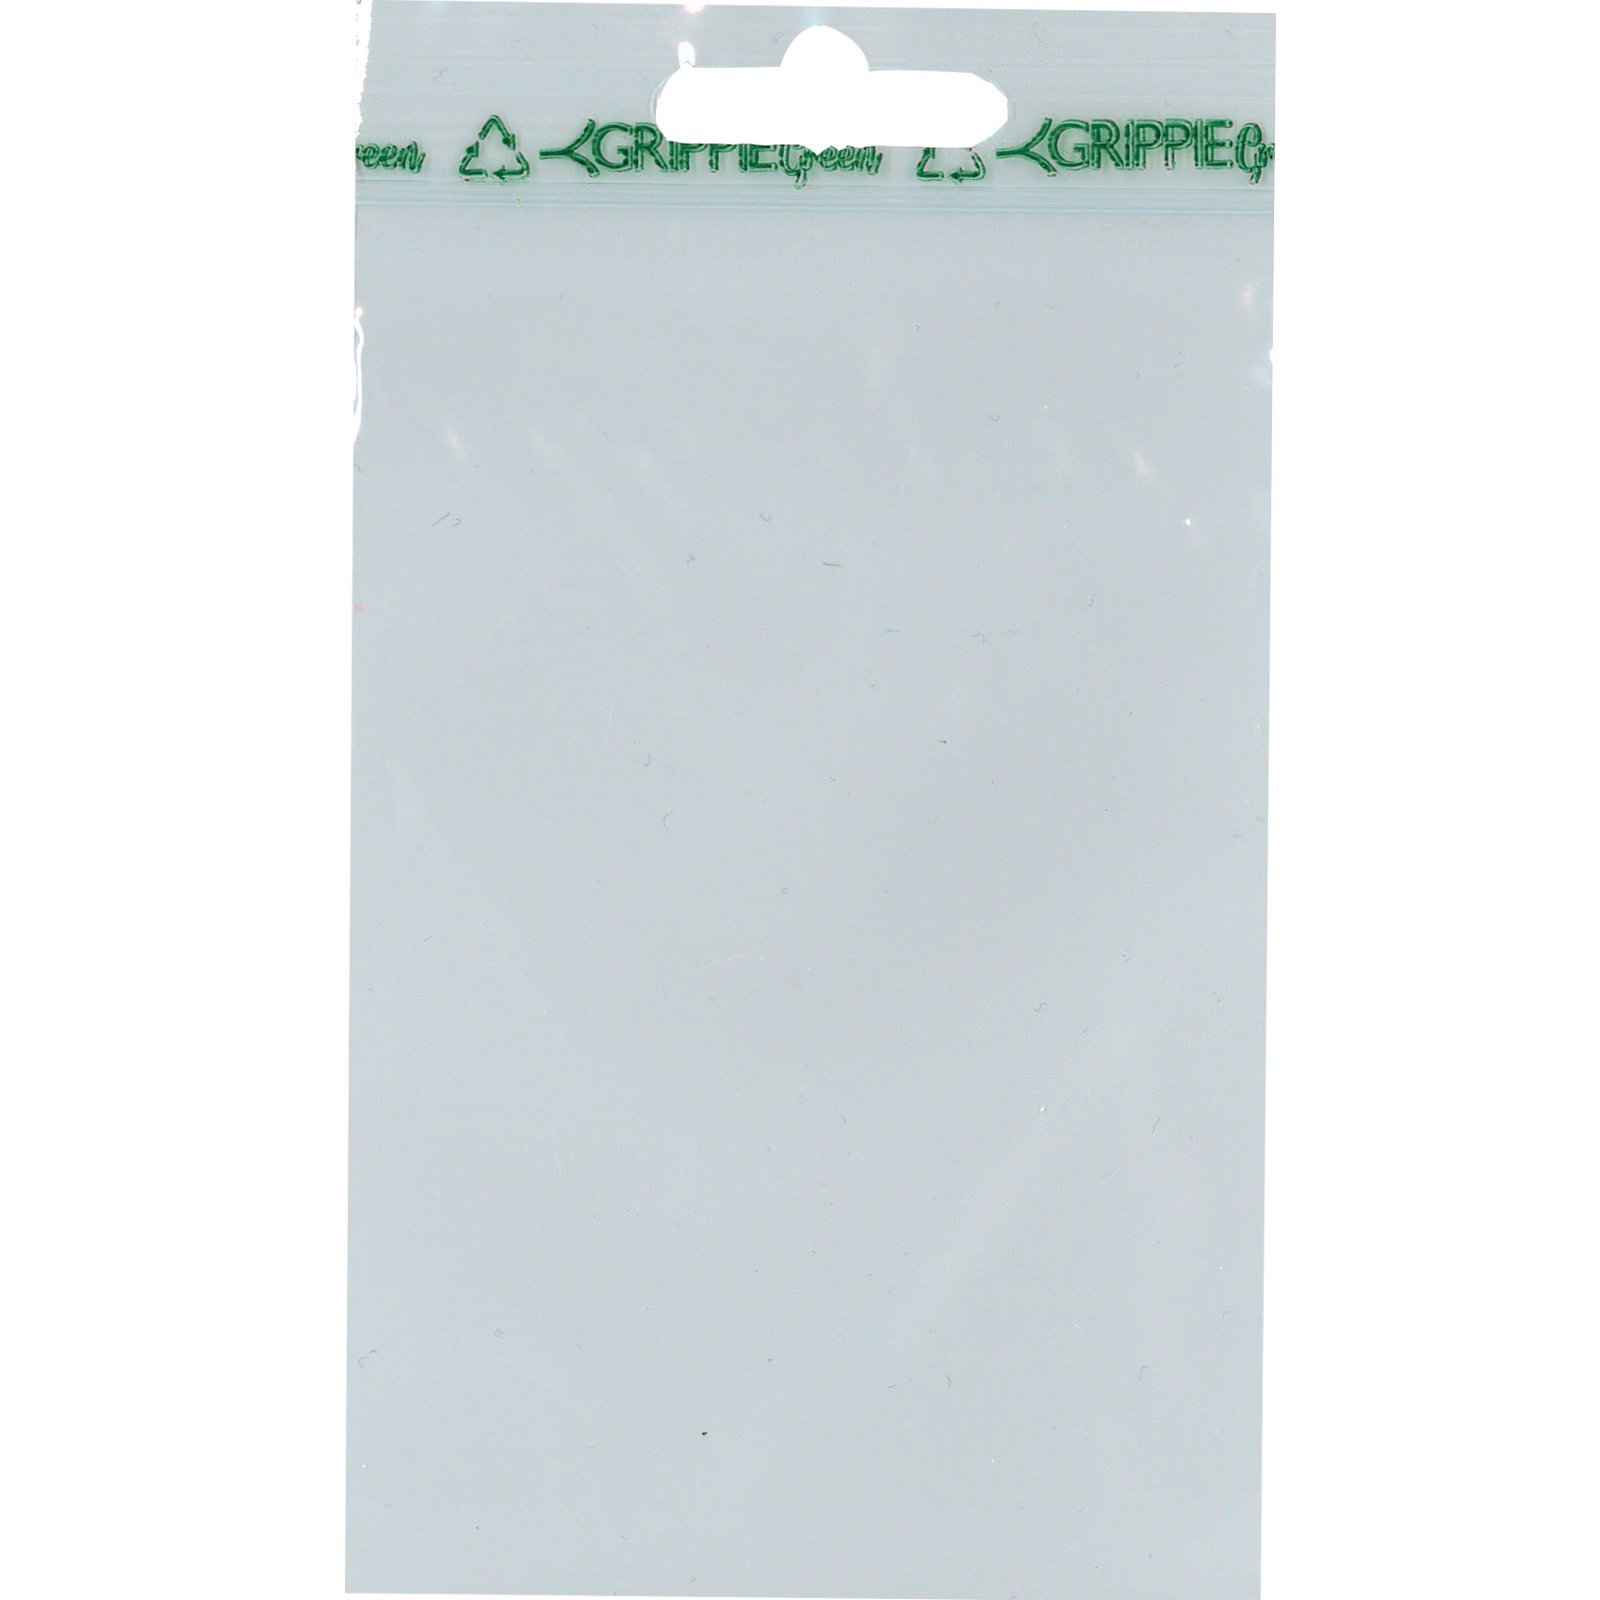 Grippie Green lynlåsposer Bioplast B80 mm x L 50 mic 1.000 stk